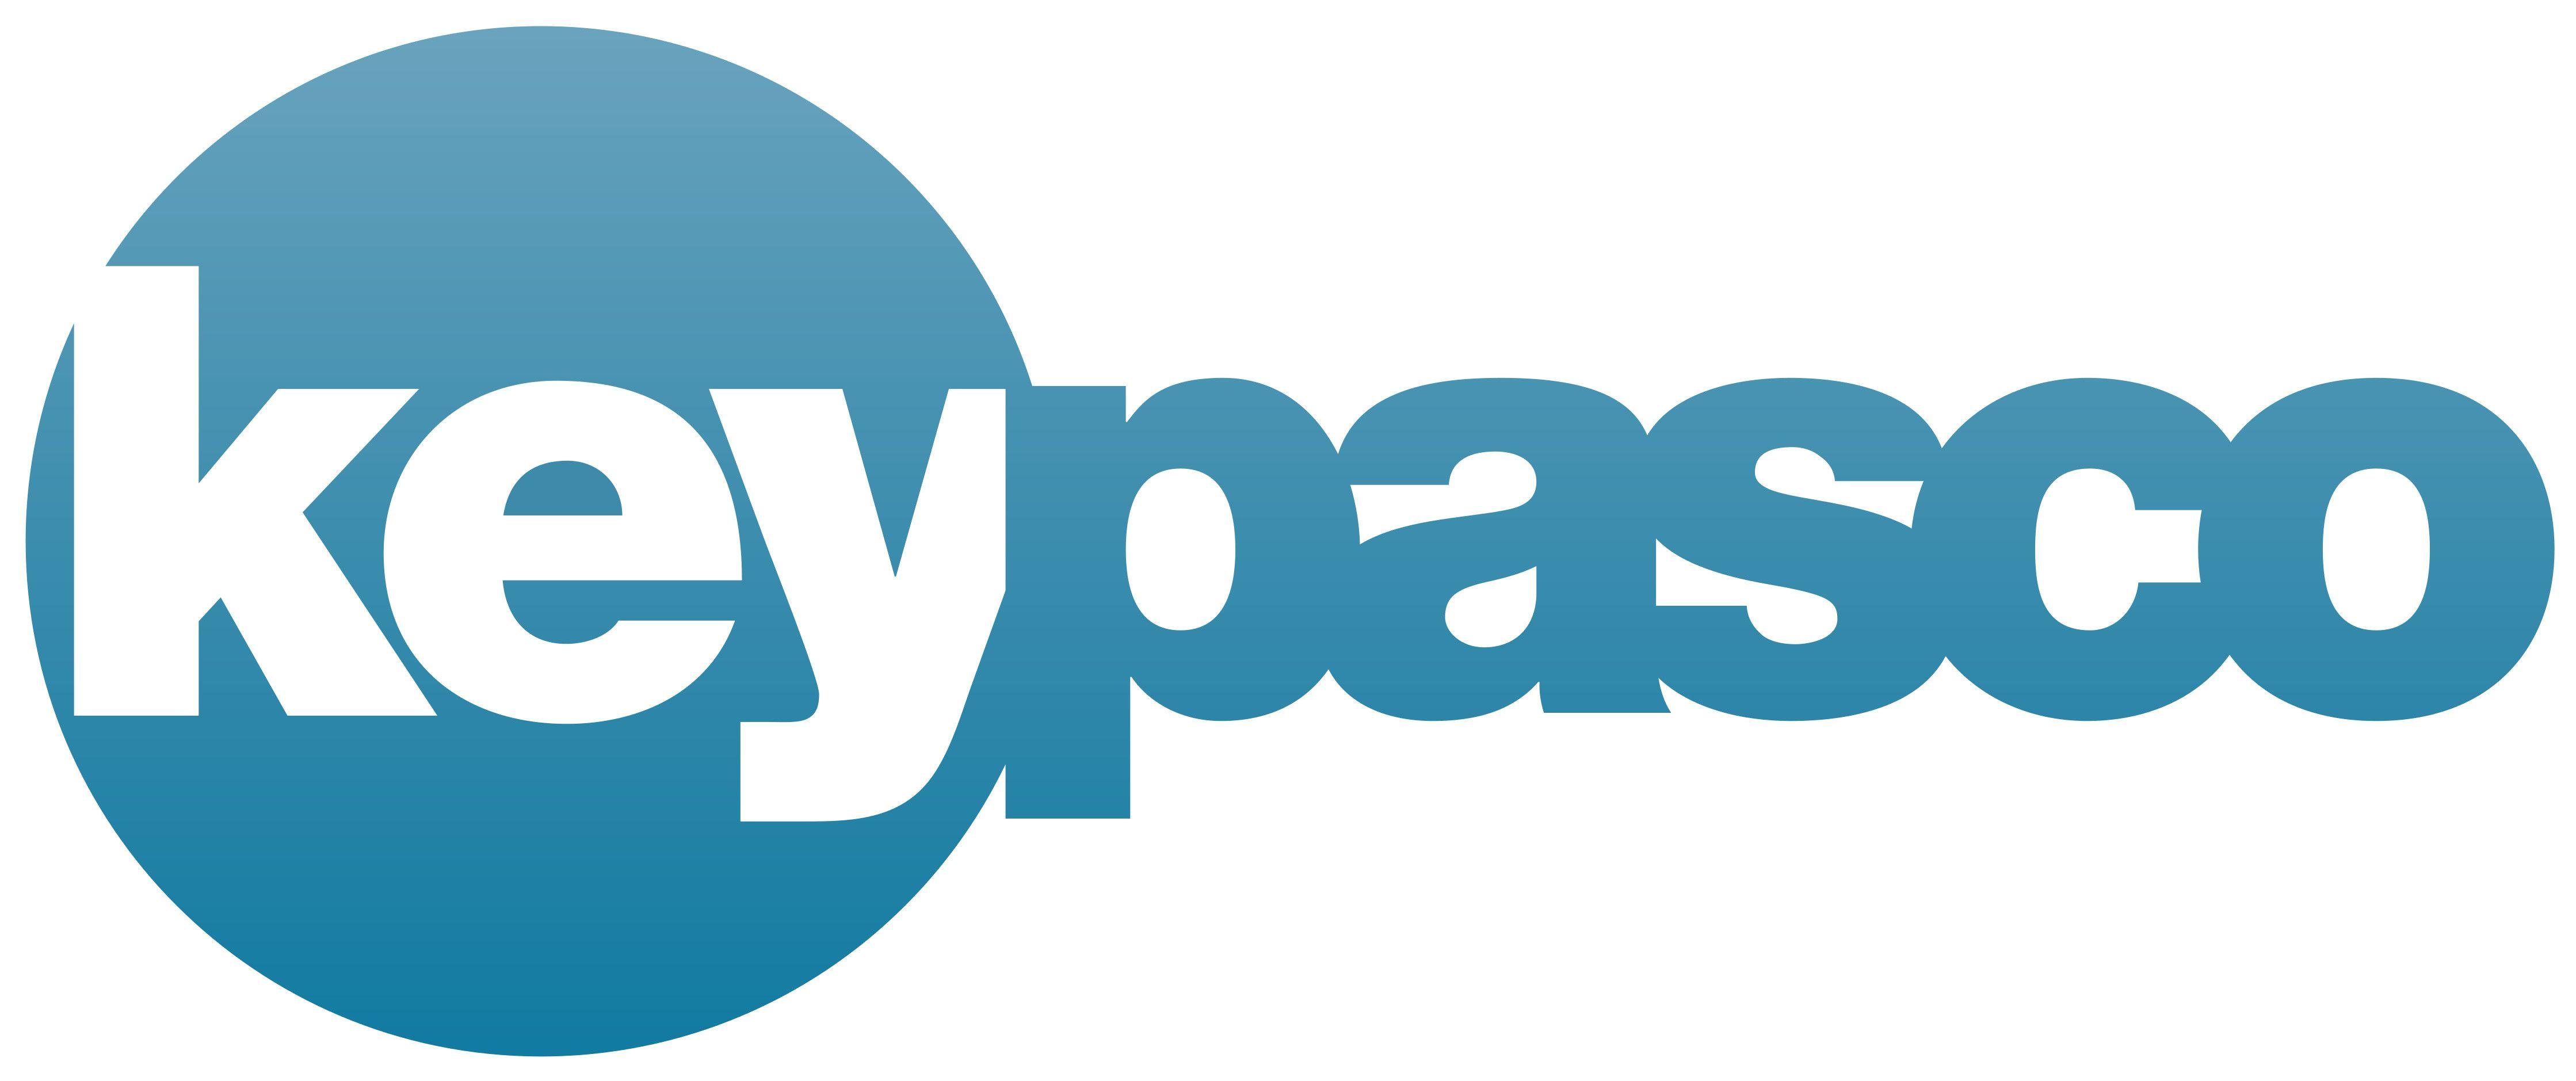 End User Server Logo - Keypasco logo